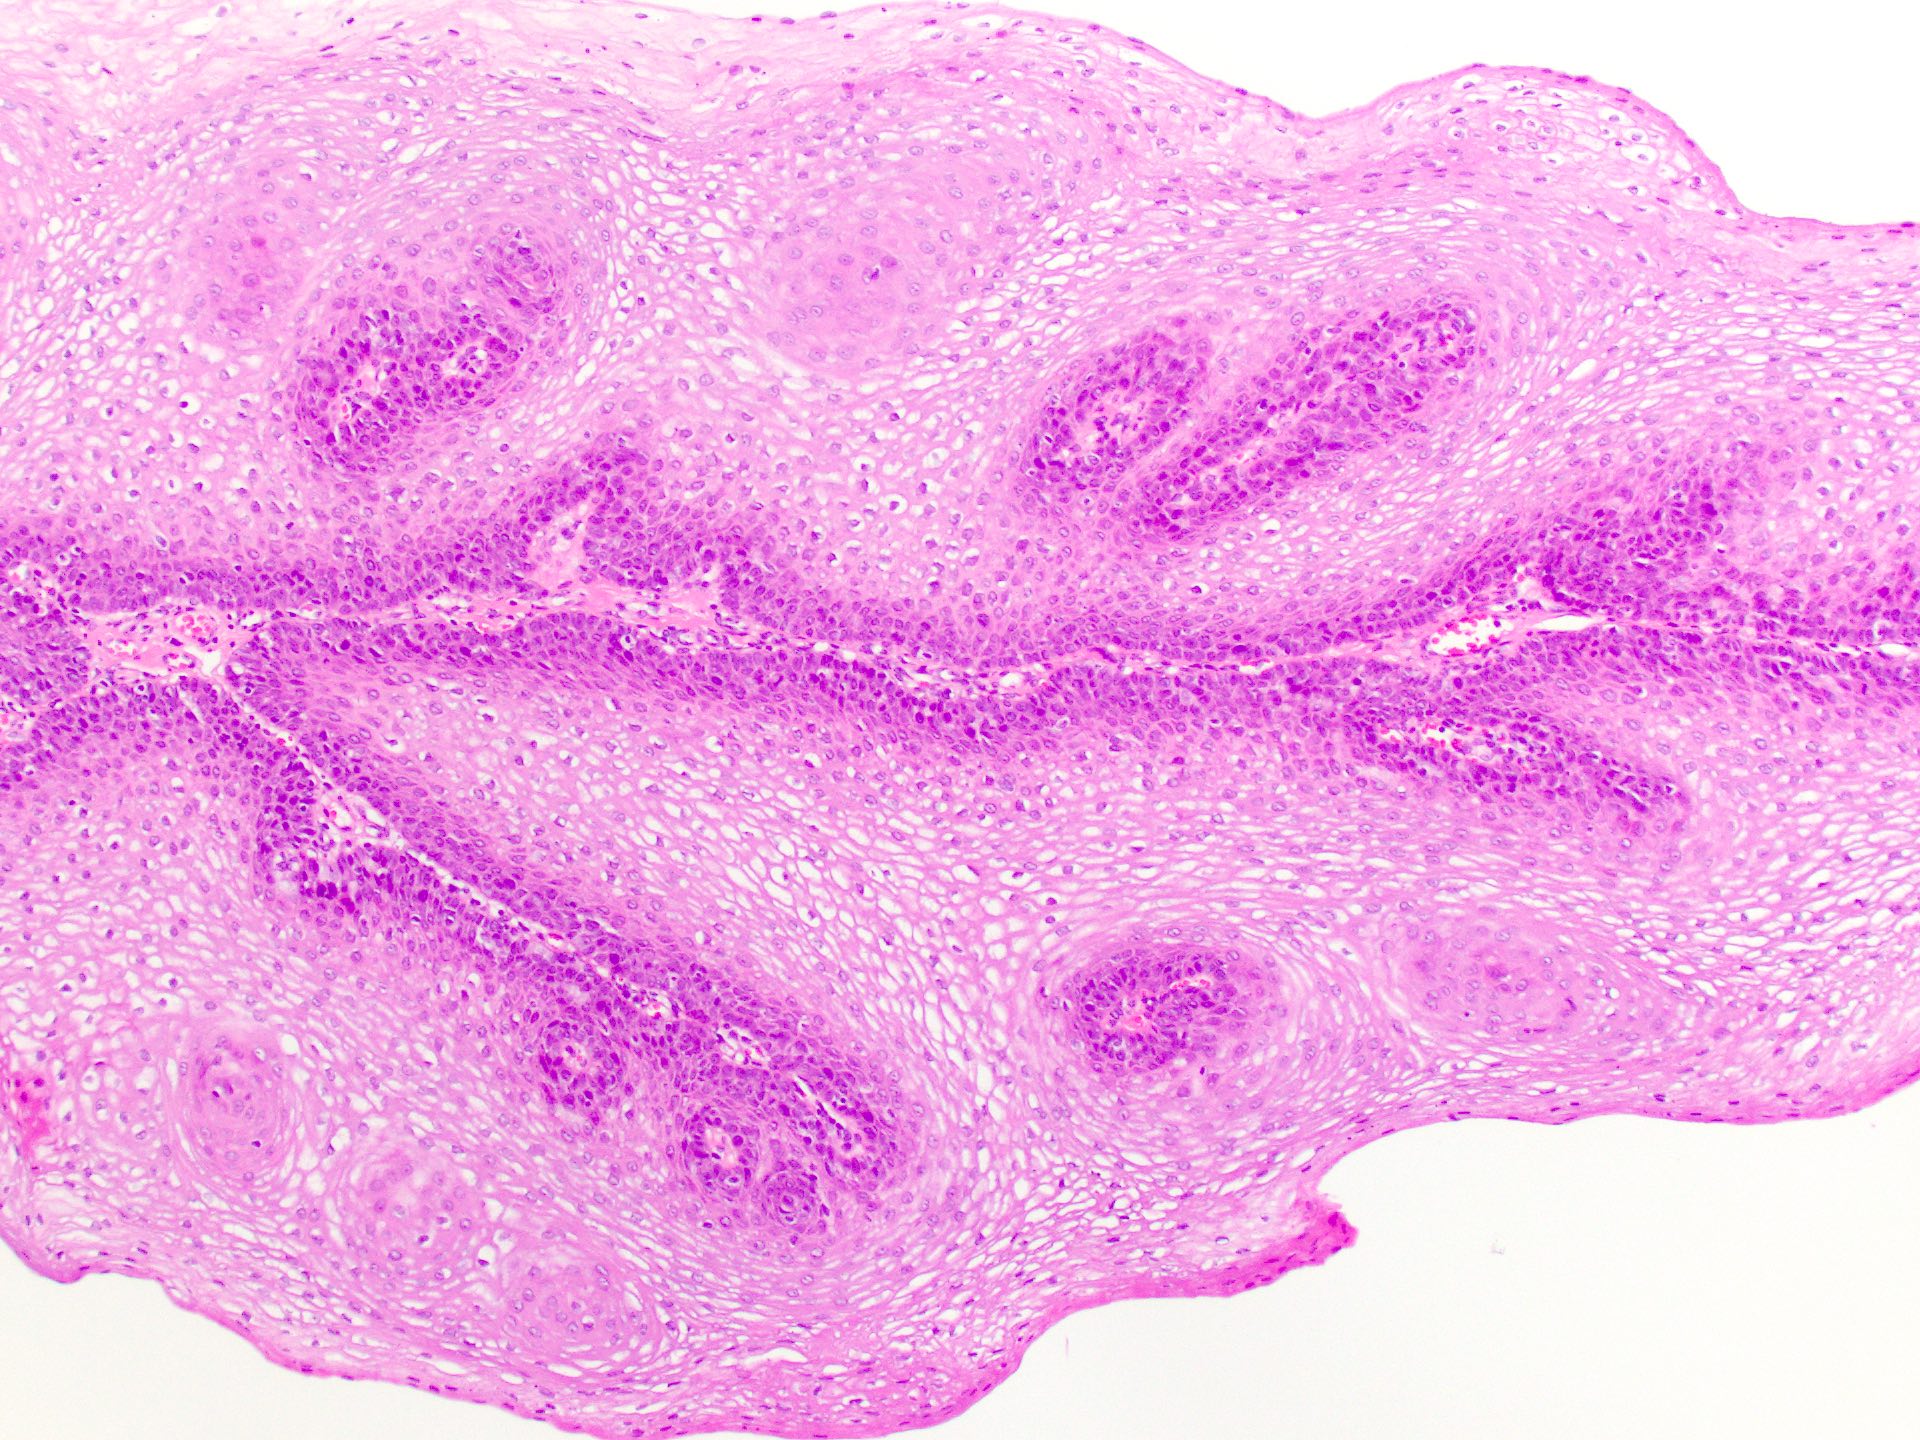 Papillomatosis skin pathology outlines. Papillomatosis skin pathology outlines